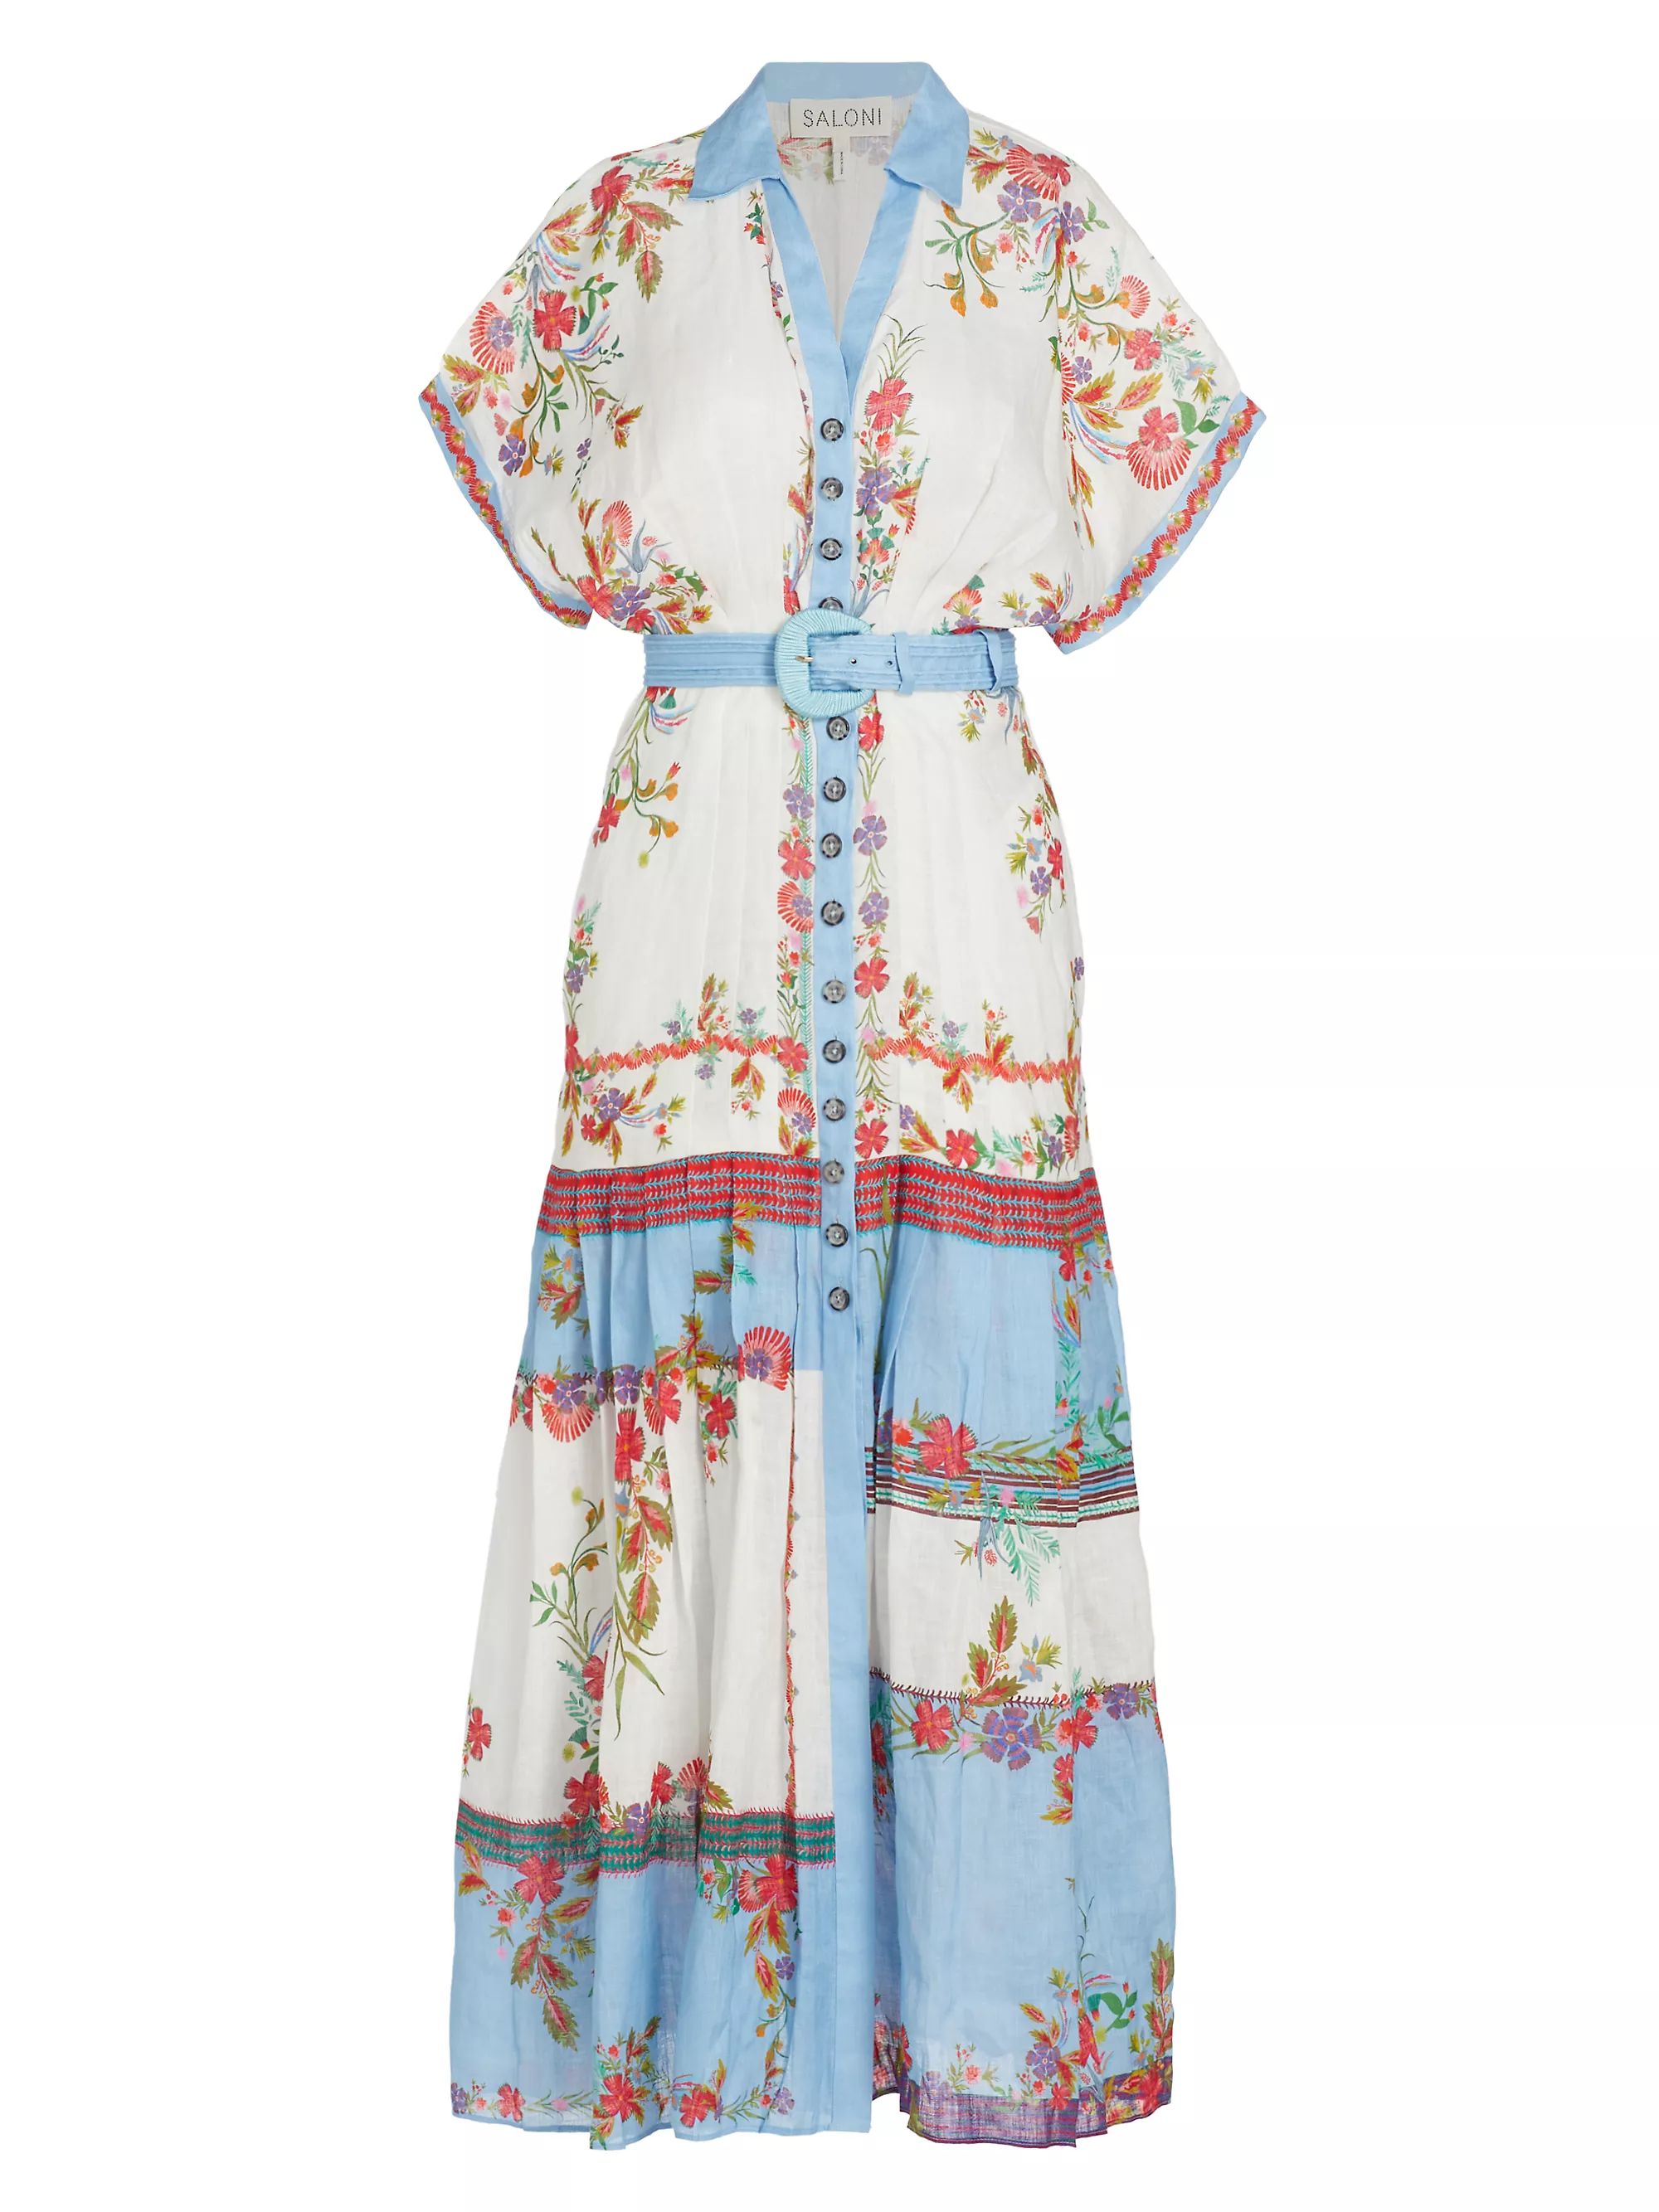 Zinnia GroveAll MidiSaloniRiya Belted Printed Linen Midi-Dress$595
            
          20% Off... | Saks Fifth Avenue